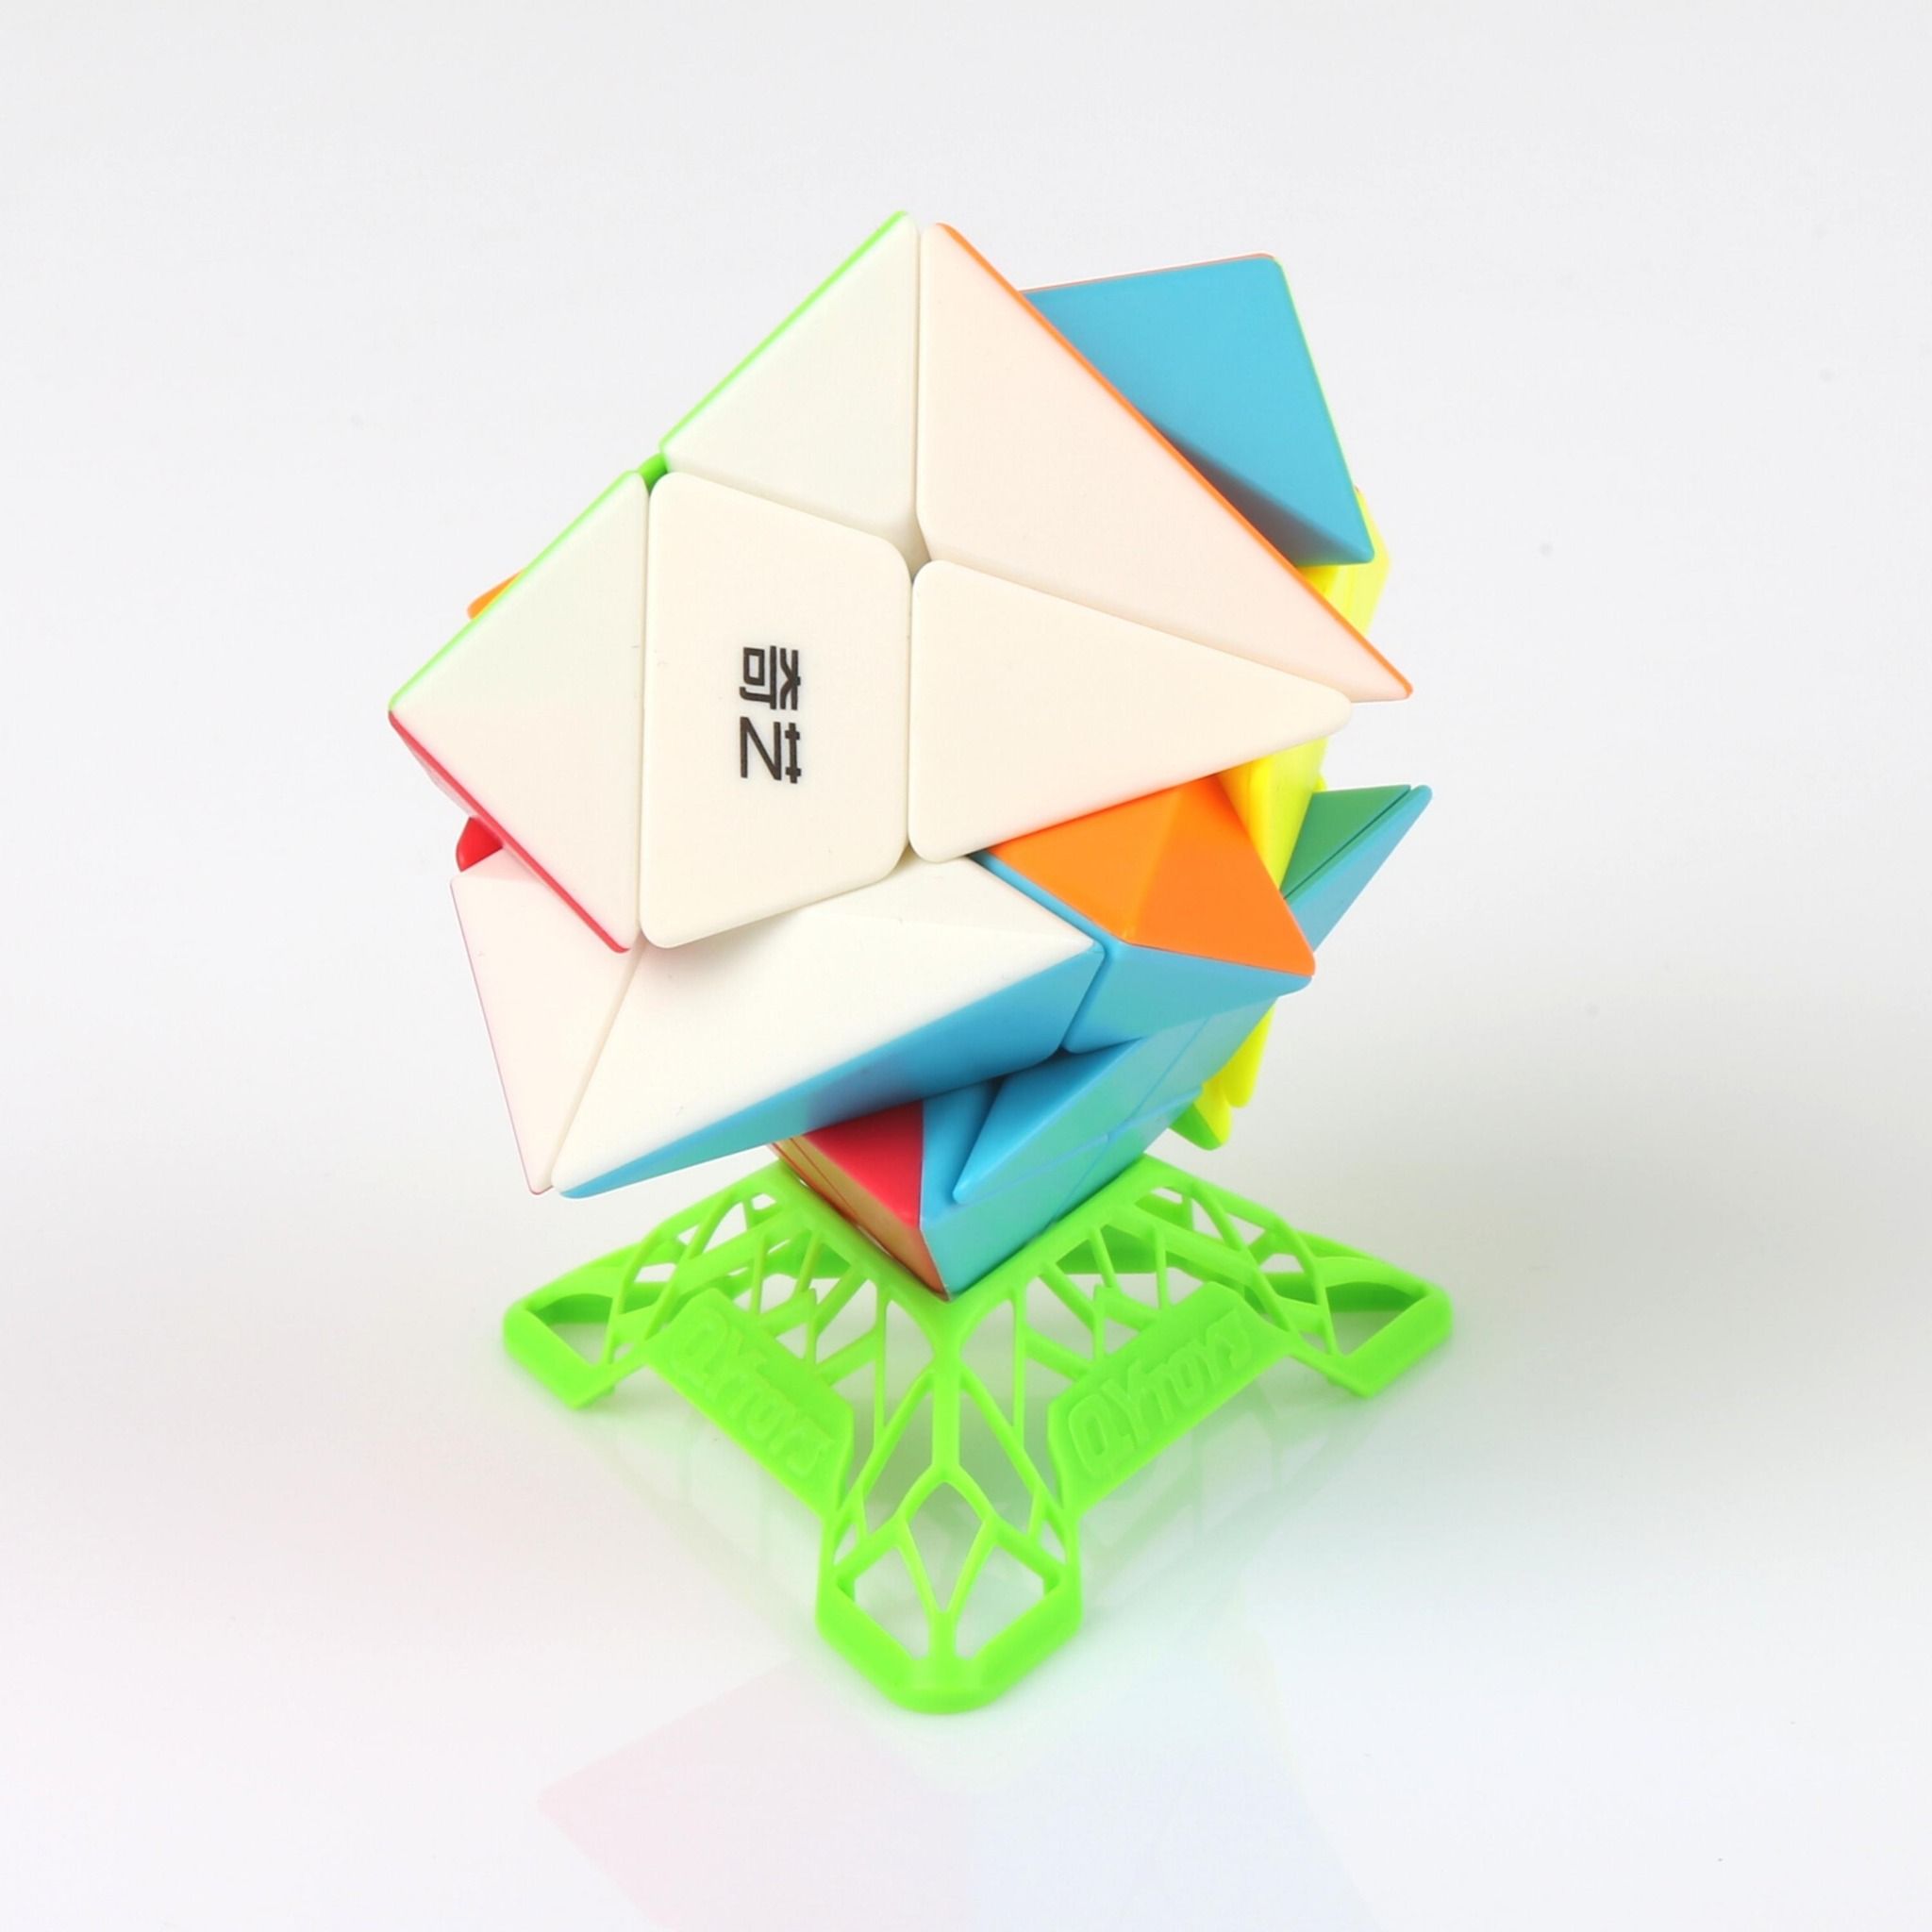  Rubik Biến Thể QiYi Axis + Đế DNA Full Màu - ZyO Rubik 